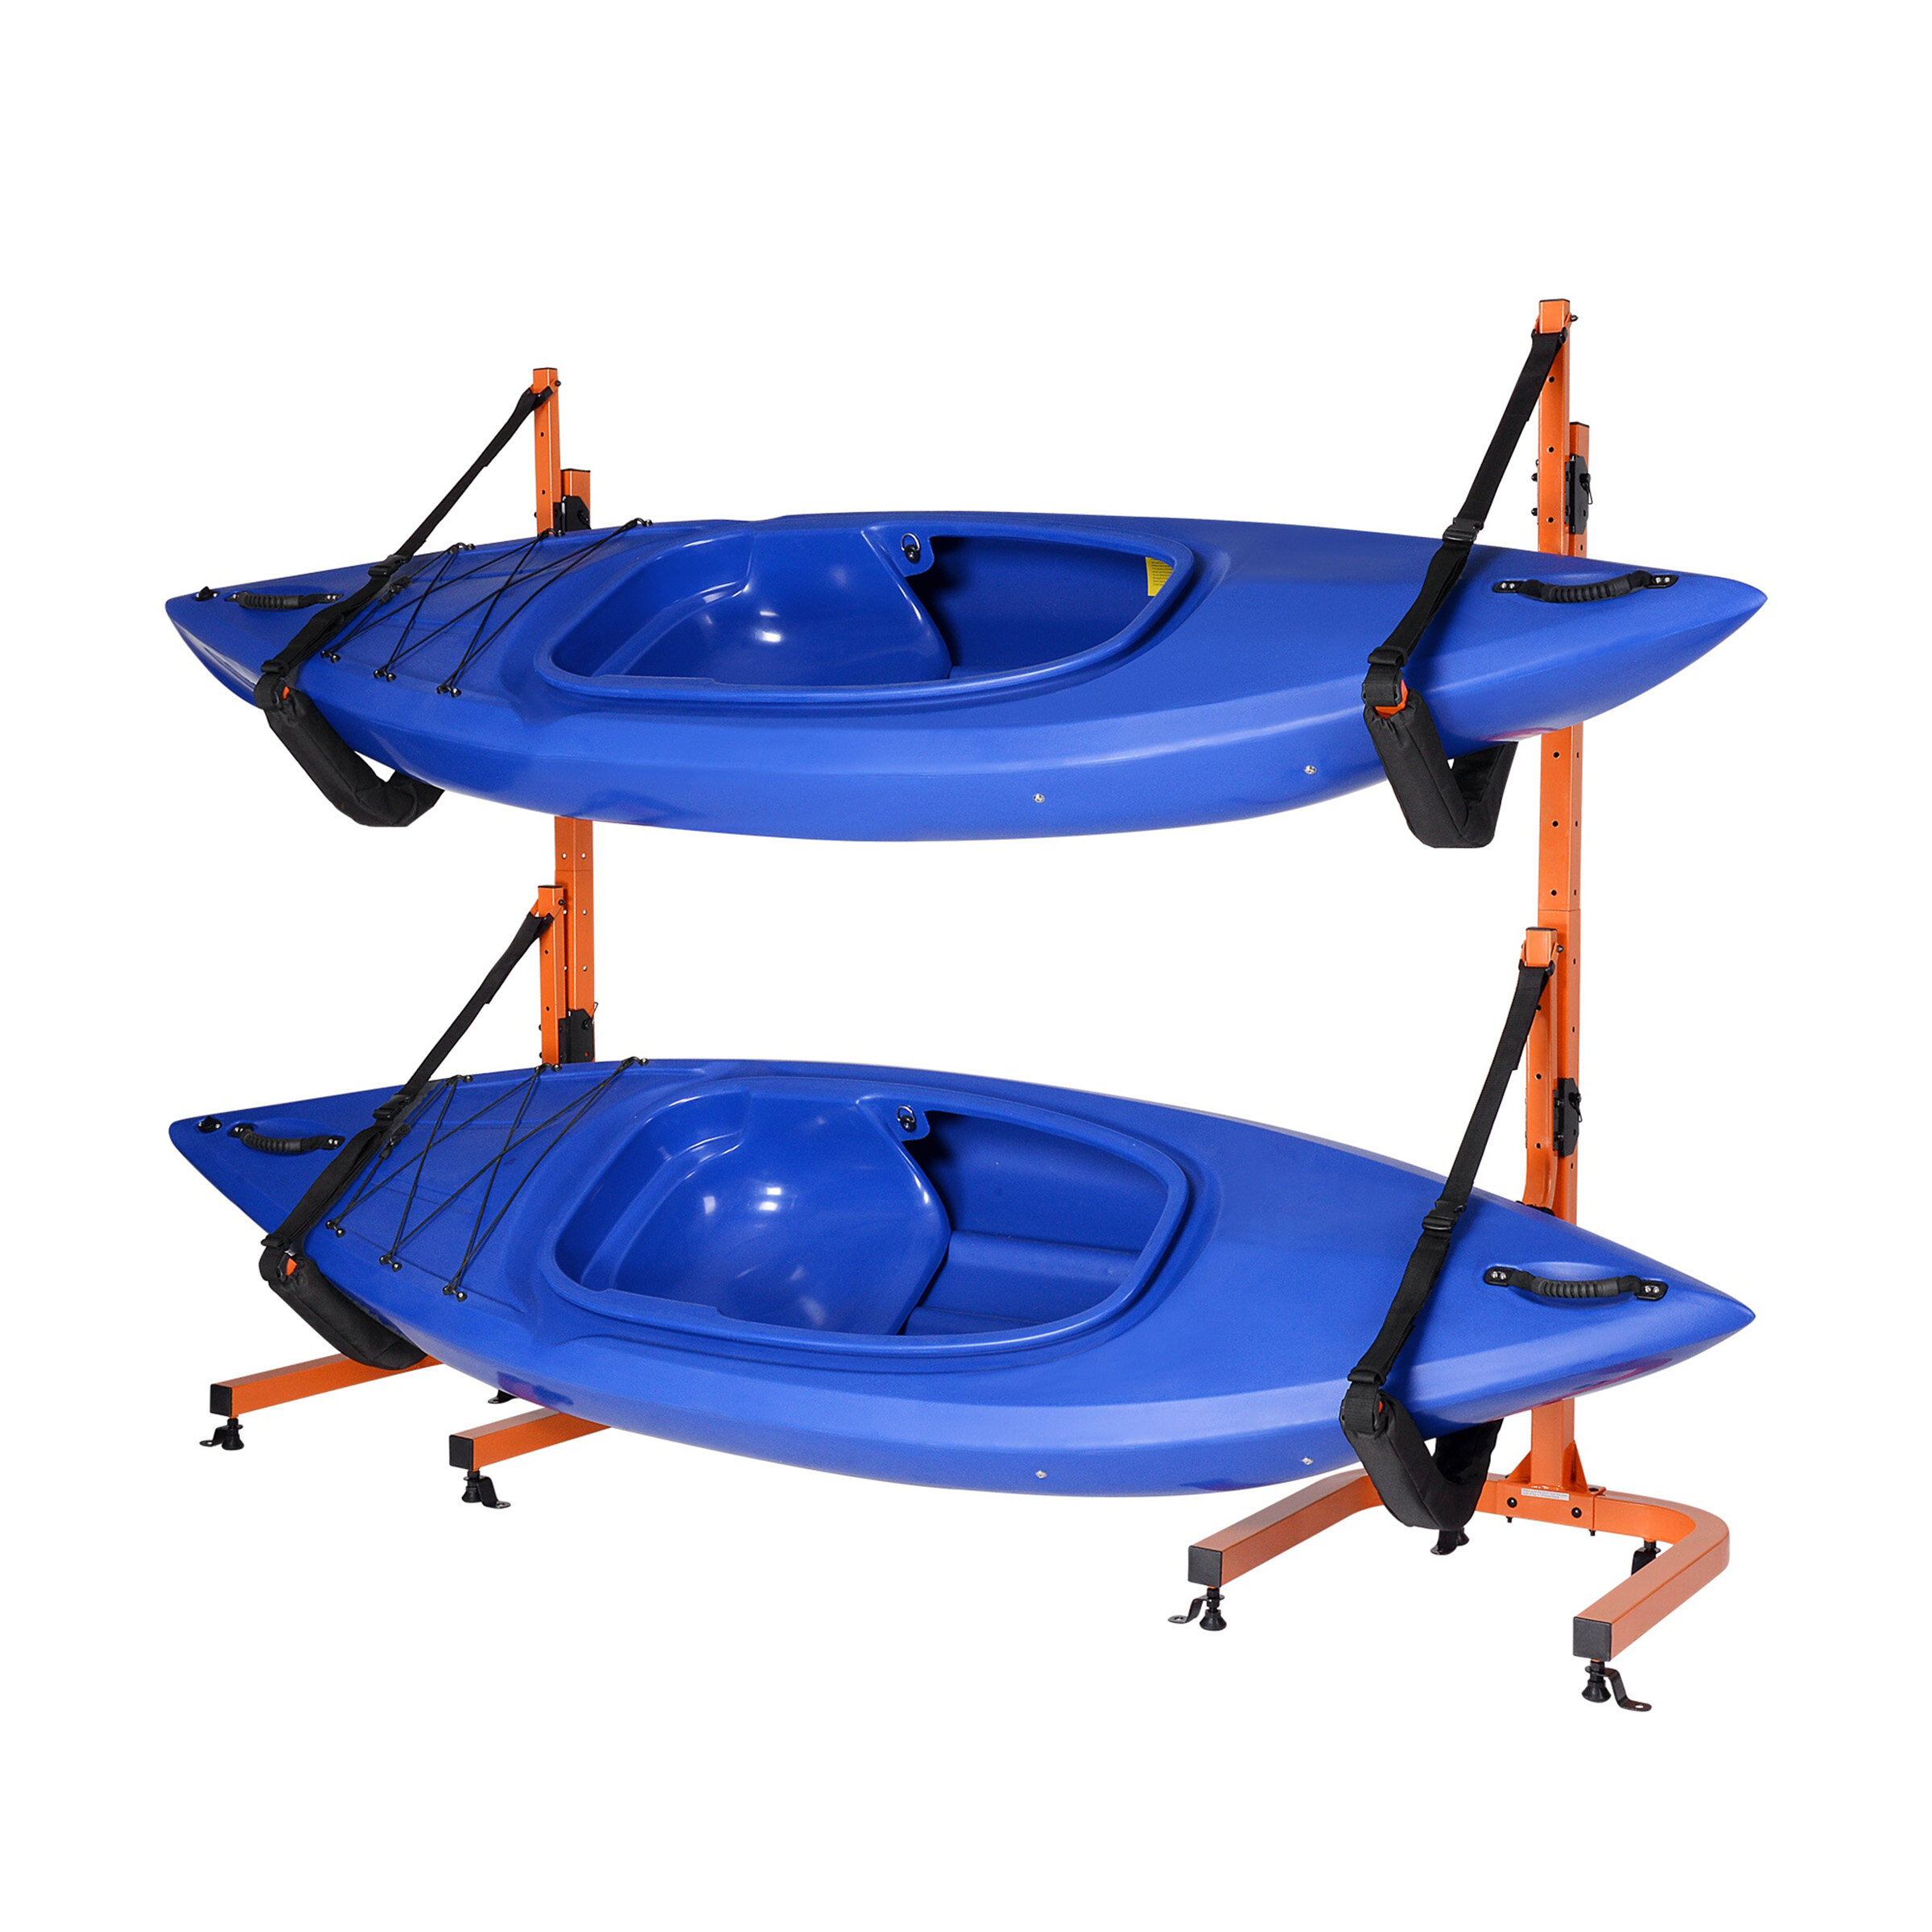 https://assets.wfcdn.com/im/96544188/compr-r85/1267/126780545/rad-sportz-kayak-storage-rack-portable-folding-boat-stands-for-garage-shed-or-dock.jpg